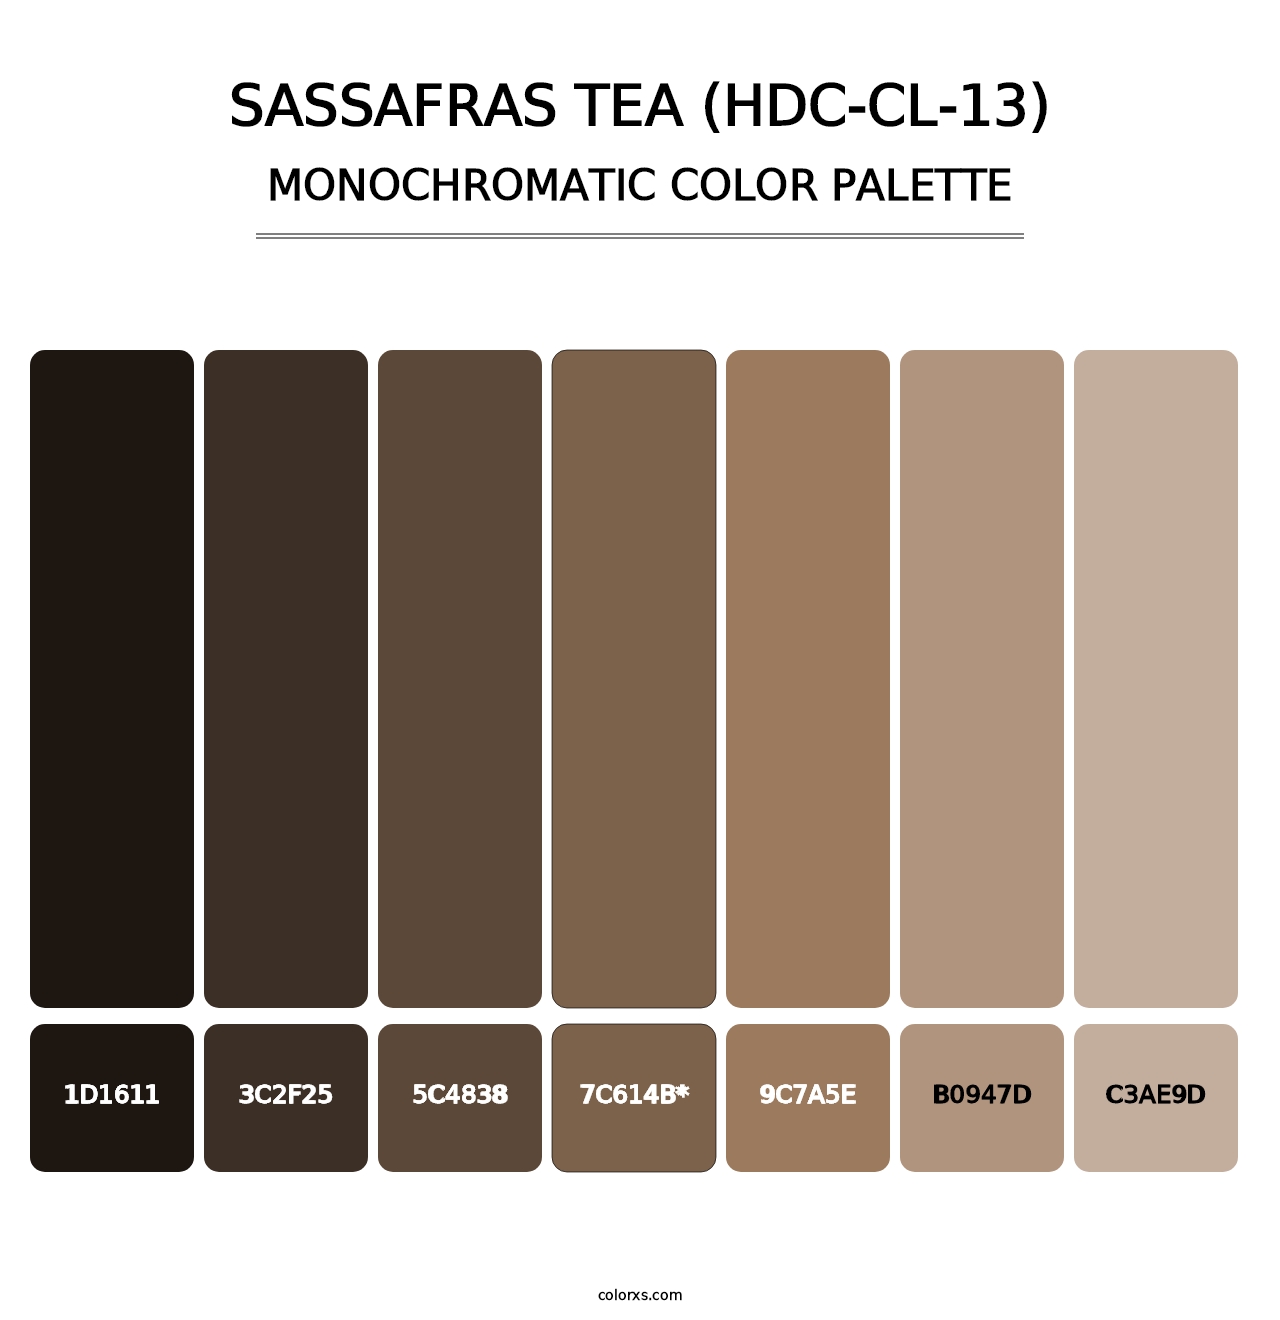 Sassafras Tea (HDC-CL-13) - Monochromatic Color Palette